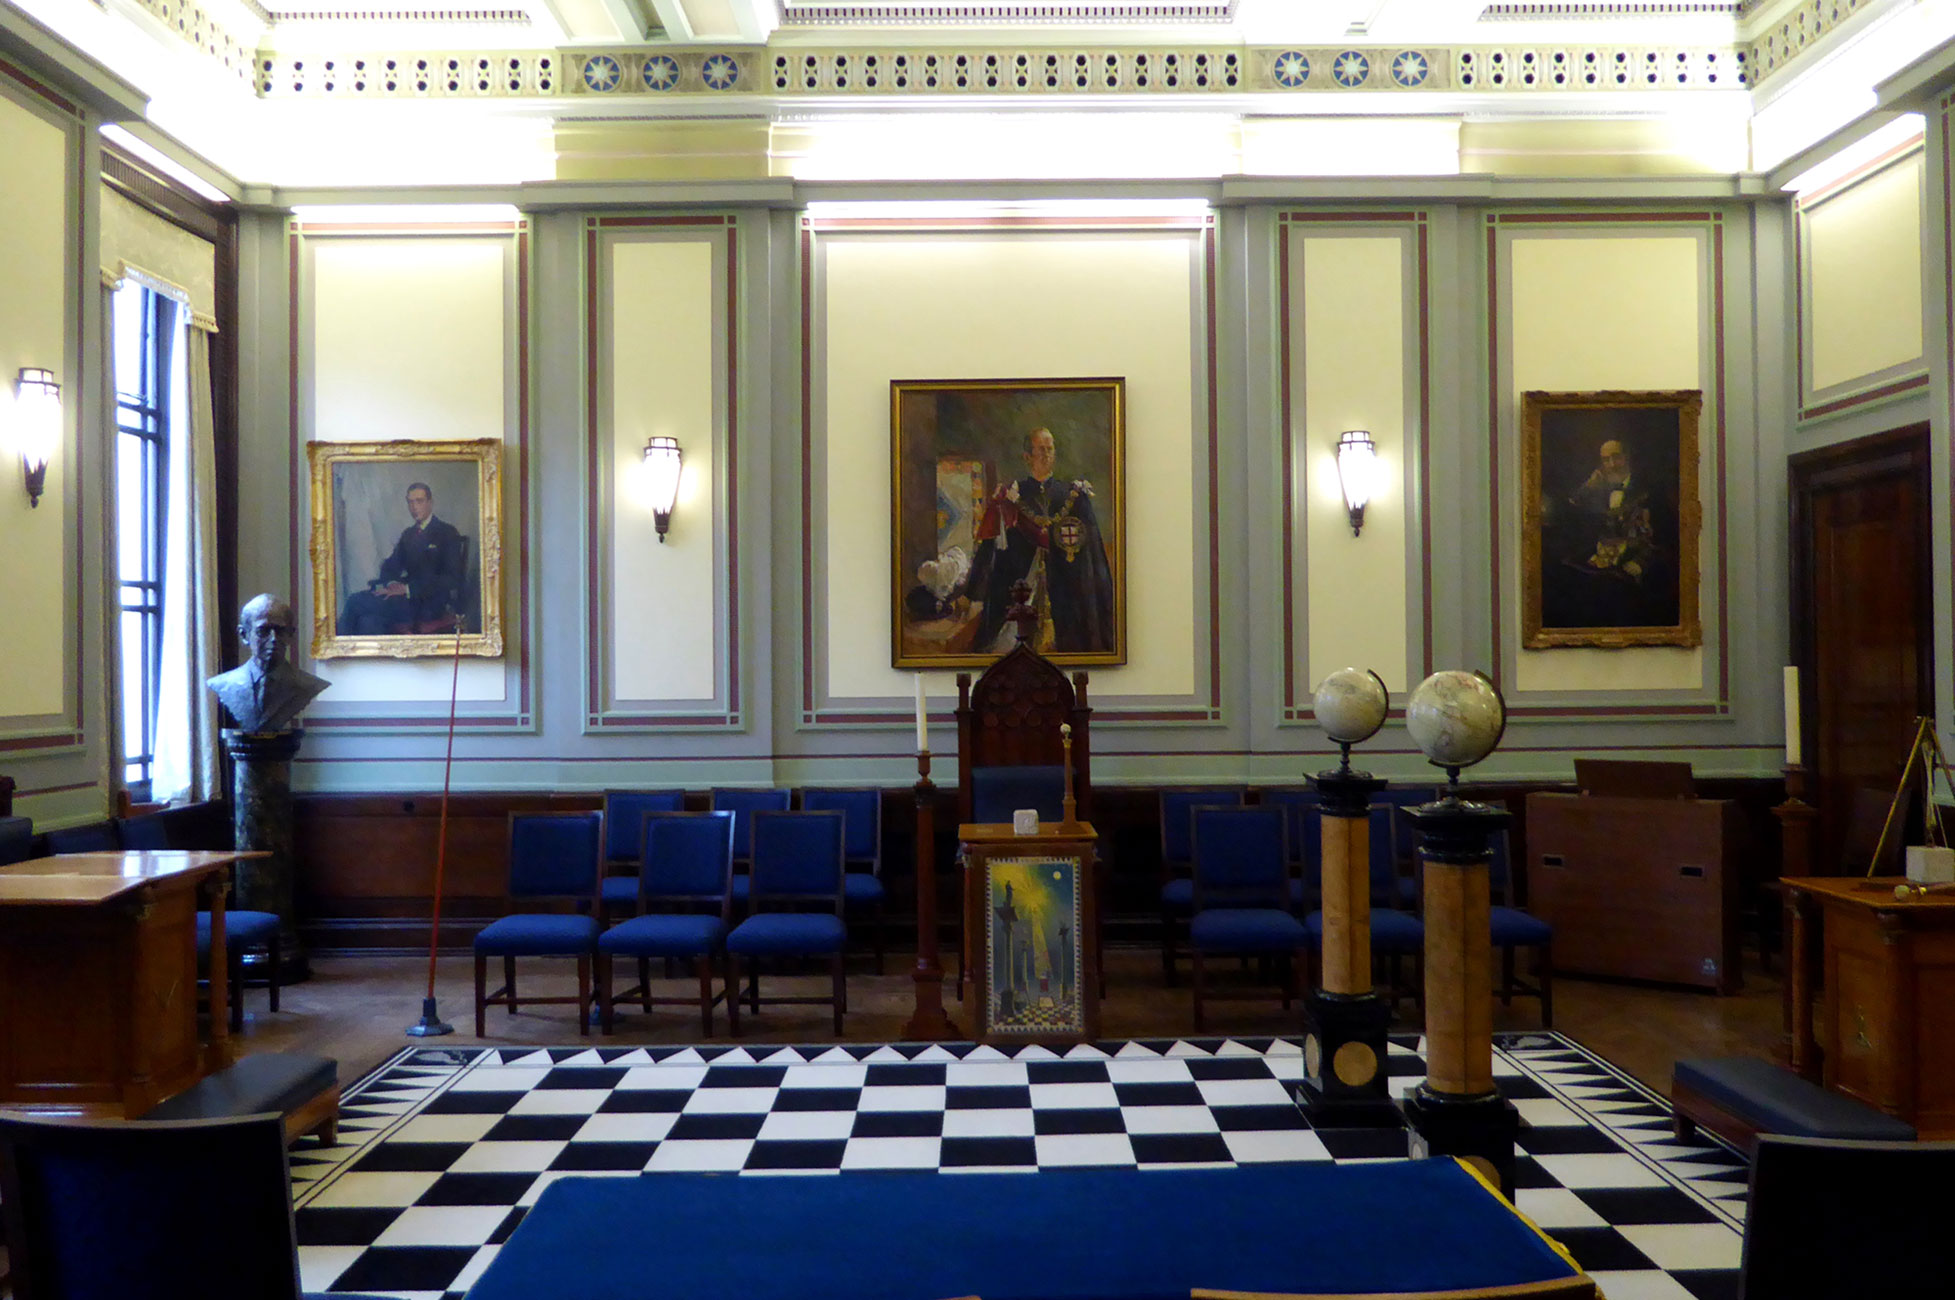 A Lodge room at Freemasons Hall, London WC2